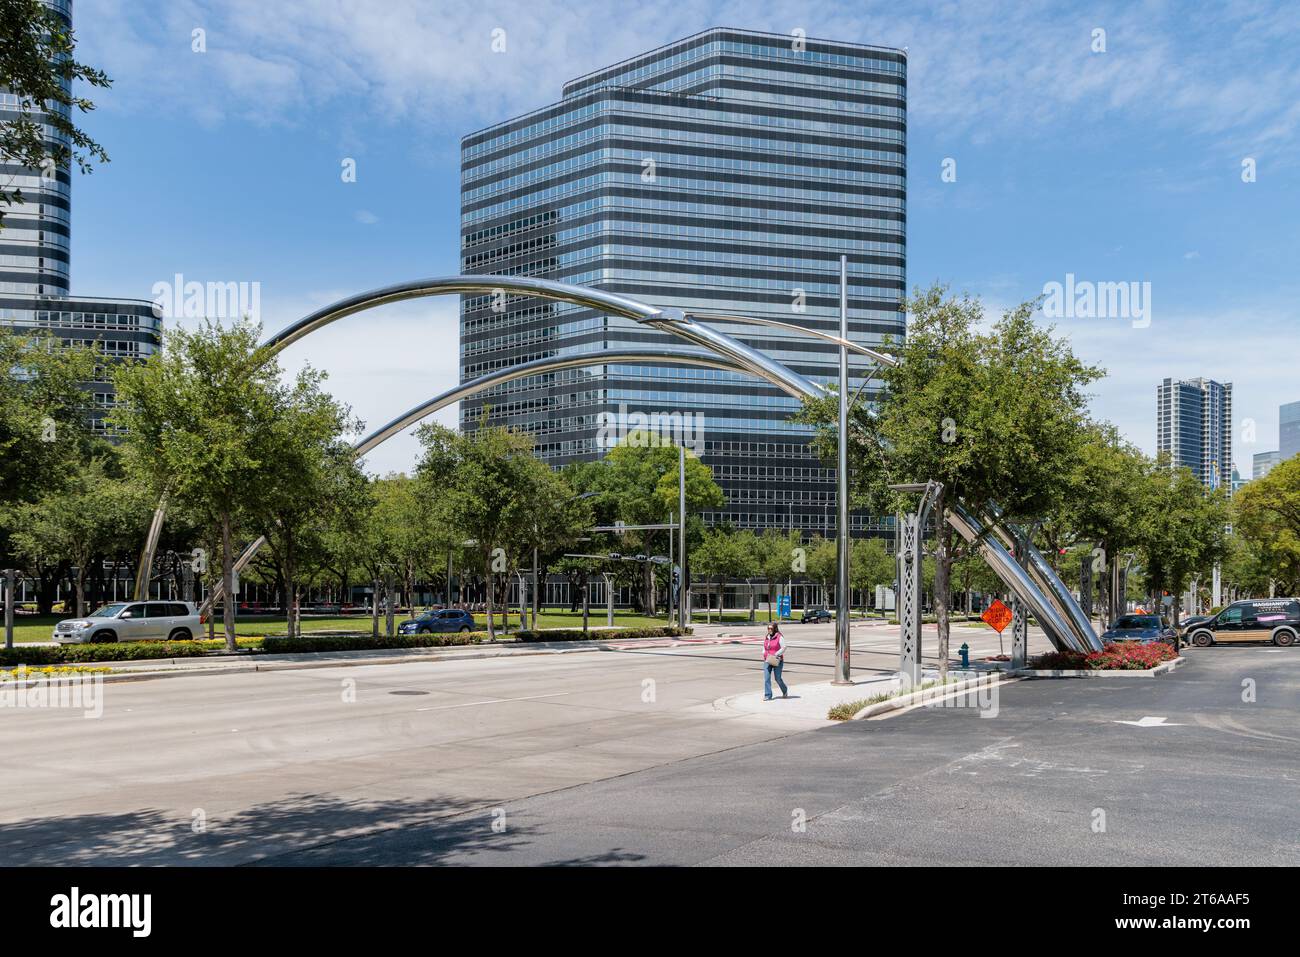 Passeggia davanti ad archi in acciaio cromato che attraversano Post Oak Boulevard nel centro di Houston, Texas Foto Stock